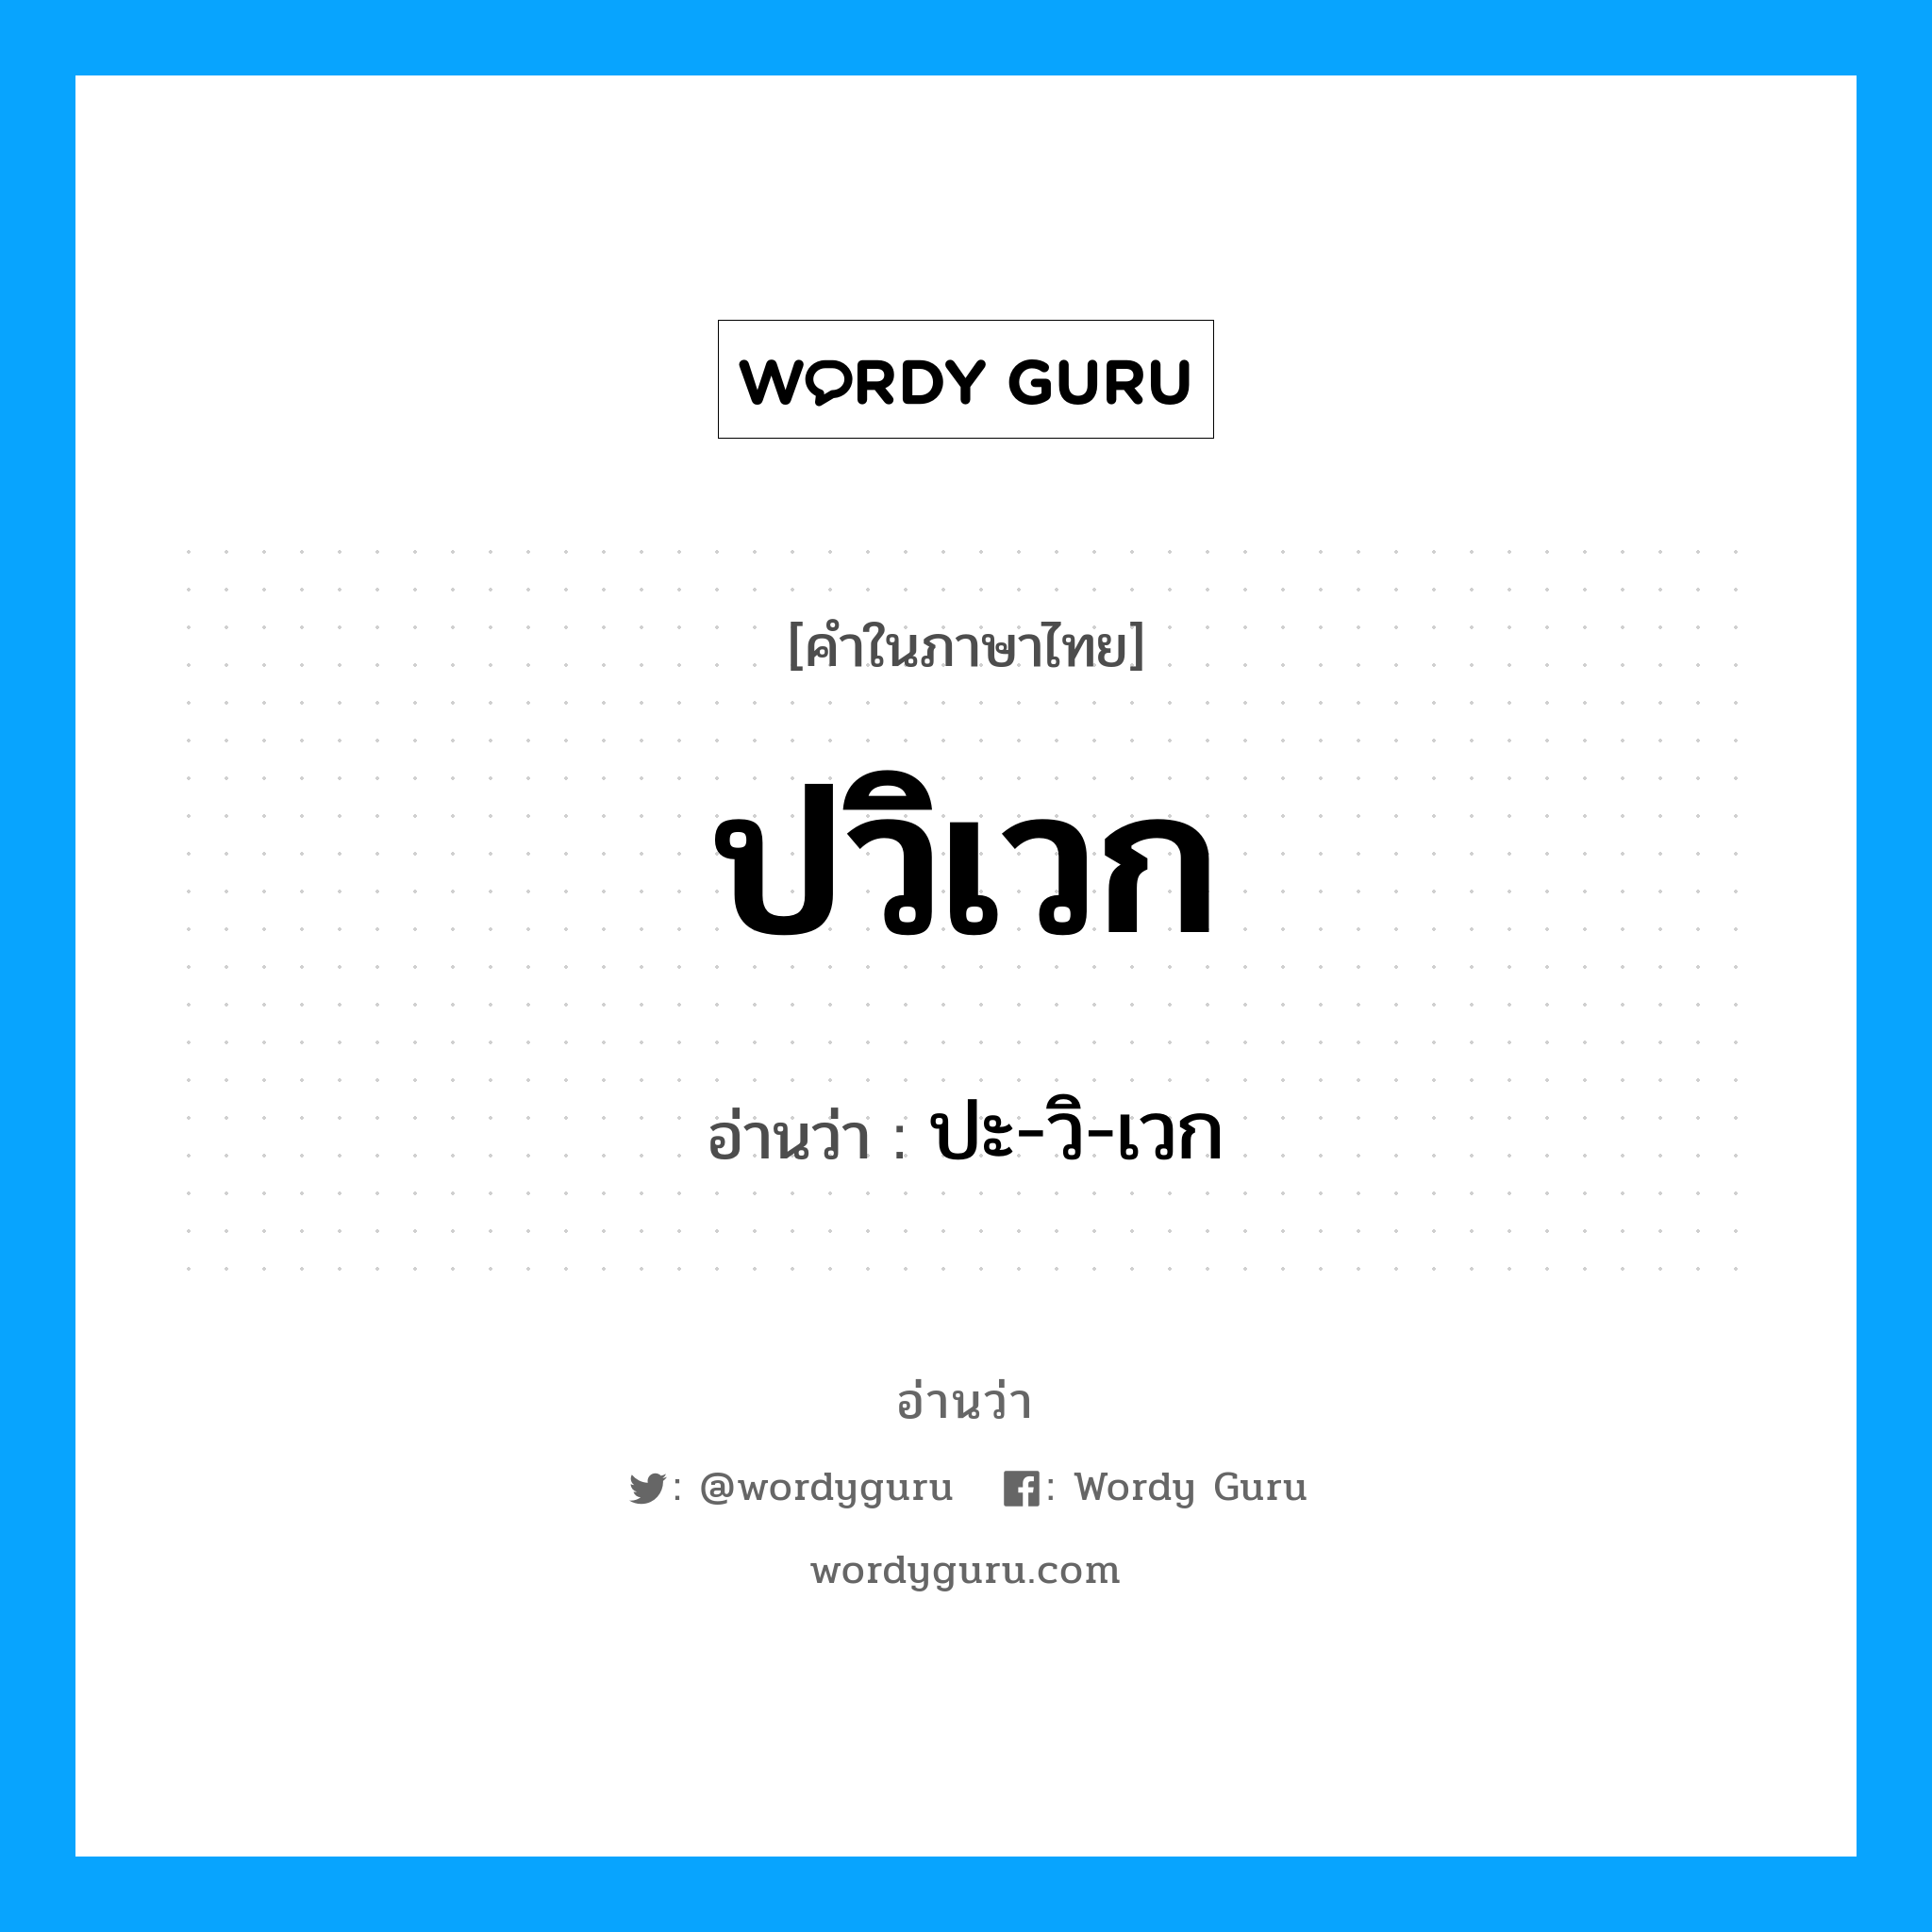 ปะ-วิ-เวก เป็นคำอ่านของคำไหน?, คำในภาษาไทย ปะ-วิ-เวก อ่านว่า ปวิเวก